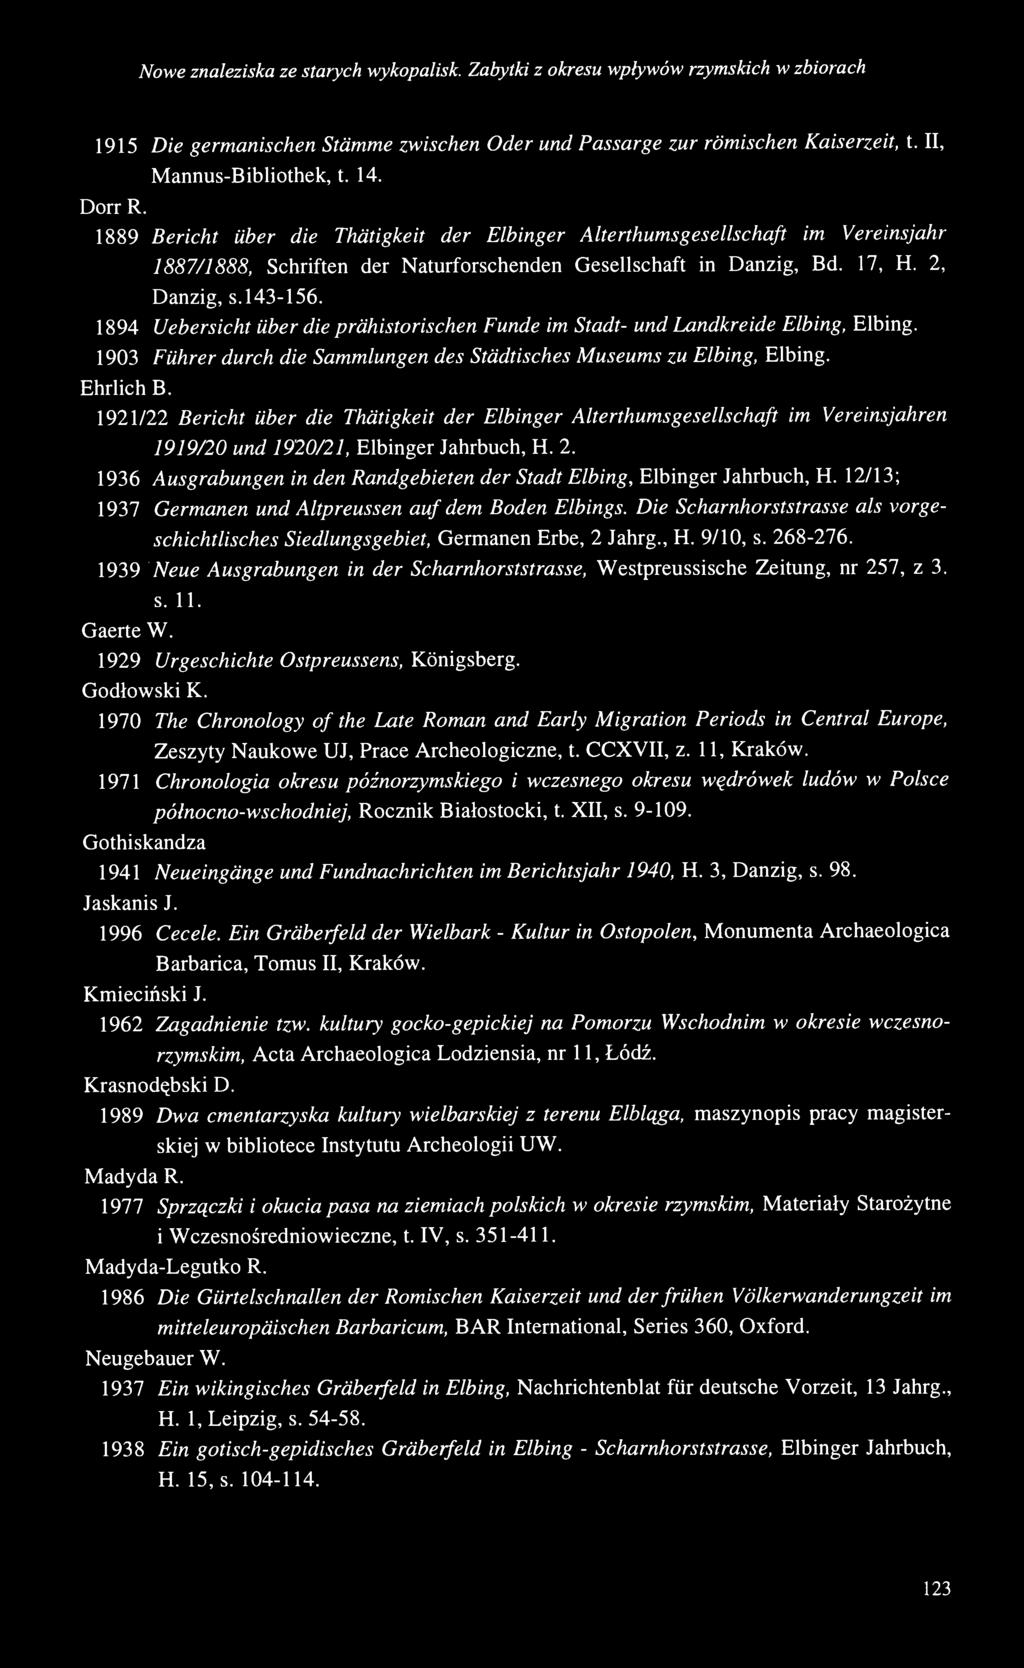 143-156. 1894 Uebersicht über die prähistorischen Funde im Stadt- und Landkreide Elbing, Elbing. 1903 Führer durch die Sammlungen des Städtisches Museums zu Elbing, Elbing. Ehrlich B.